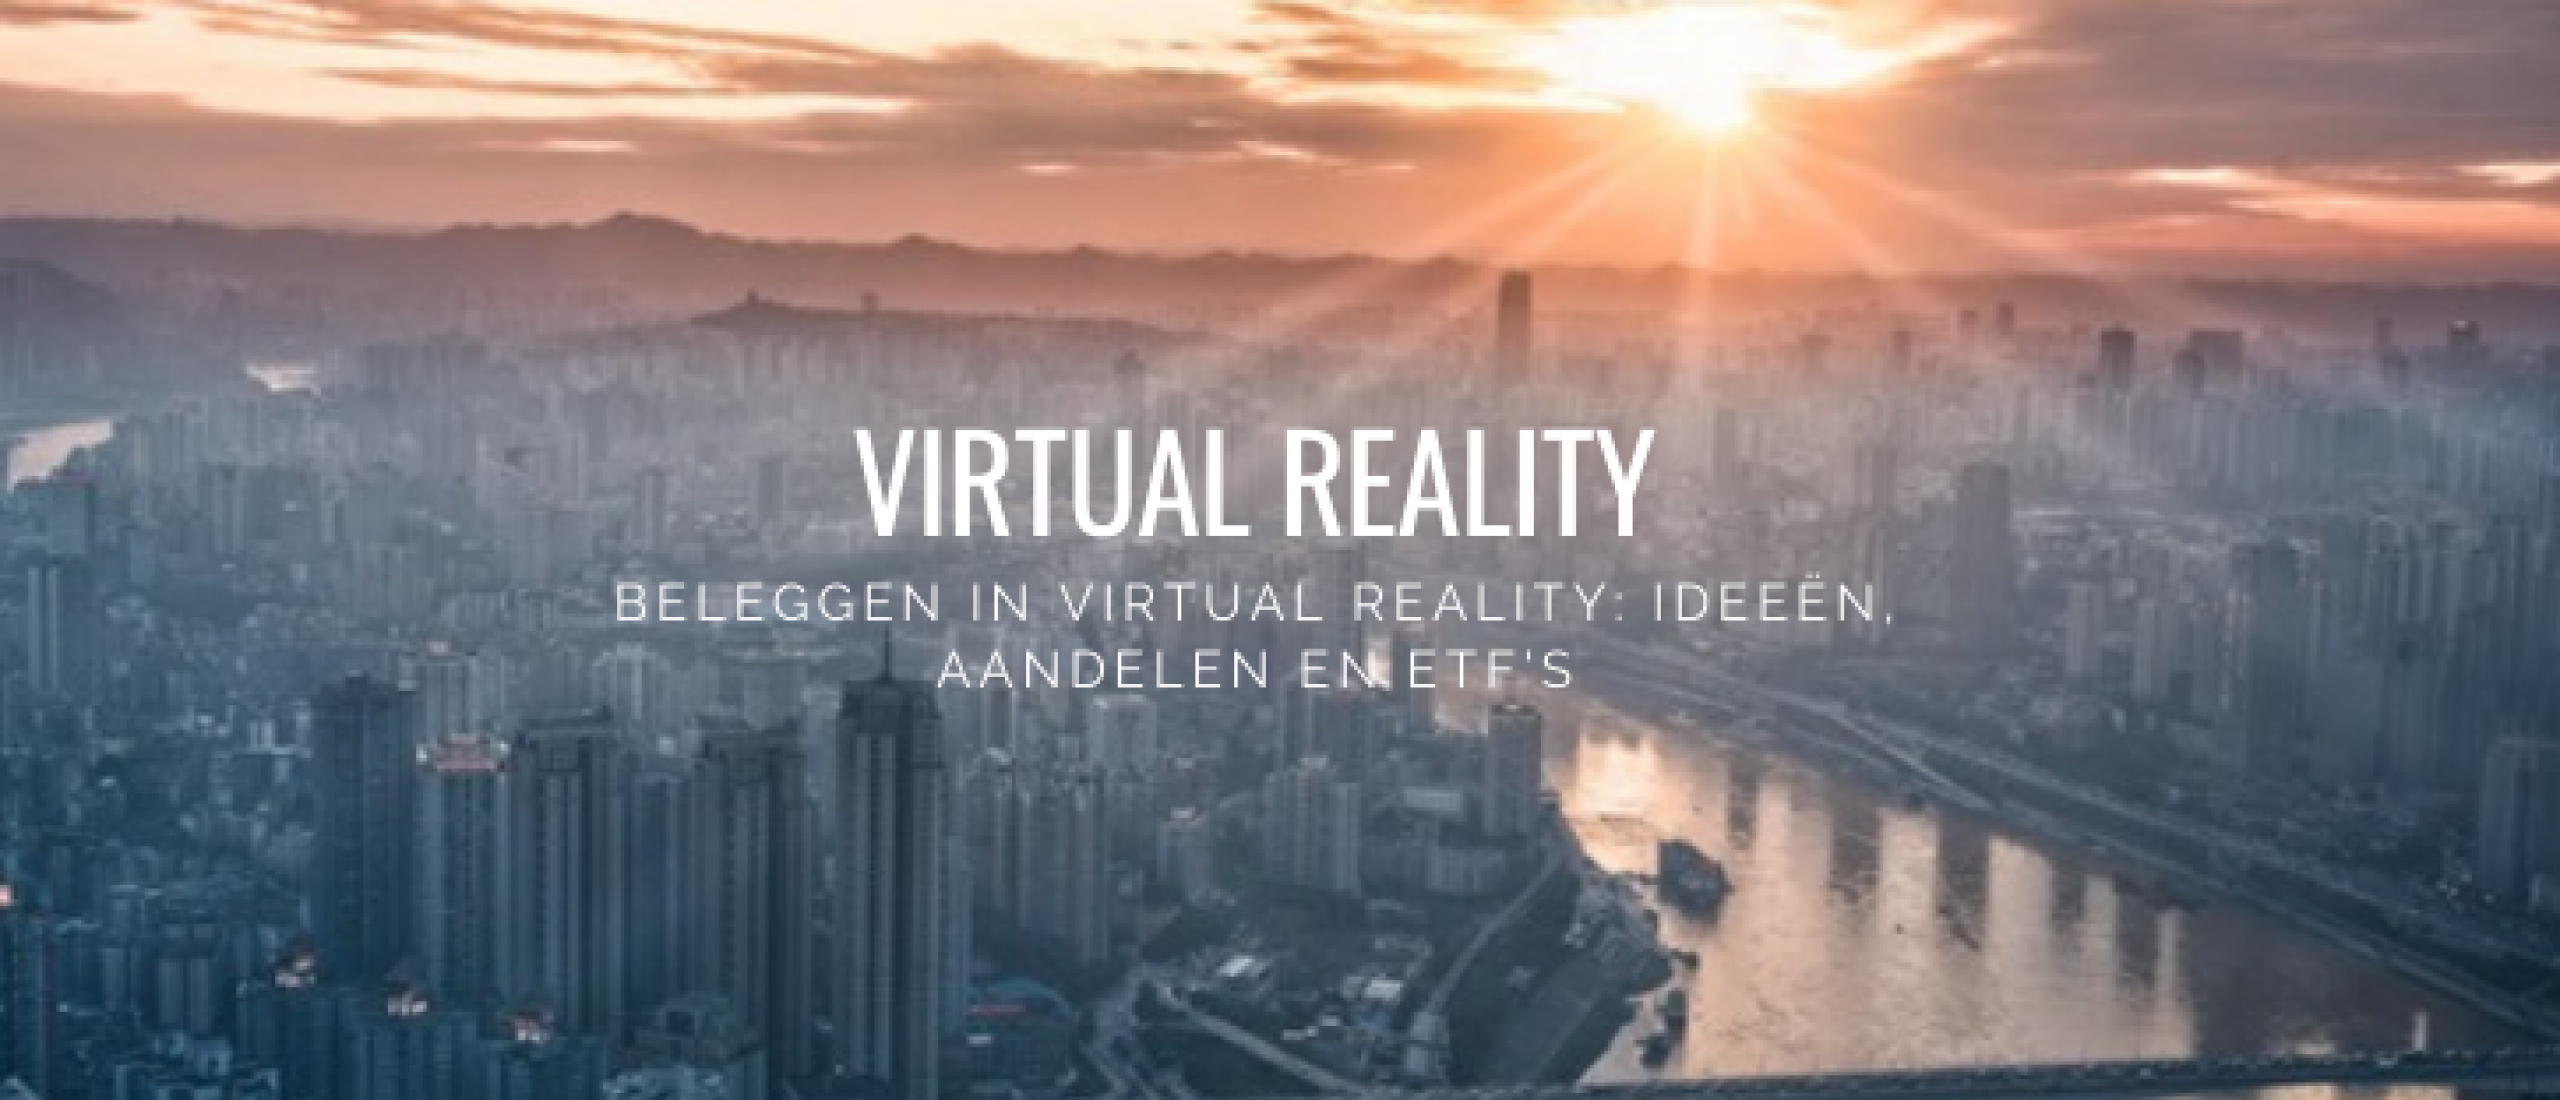 beleggen-in-virtual-reality